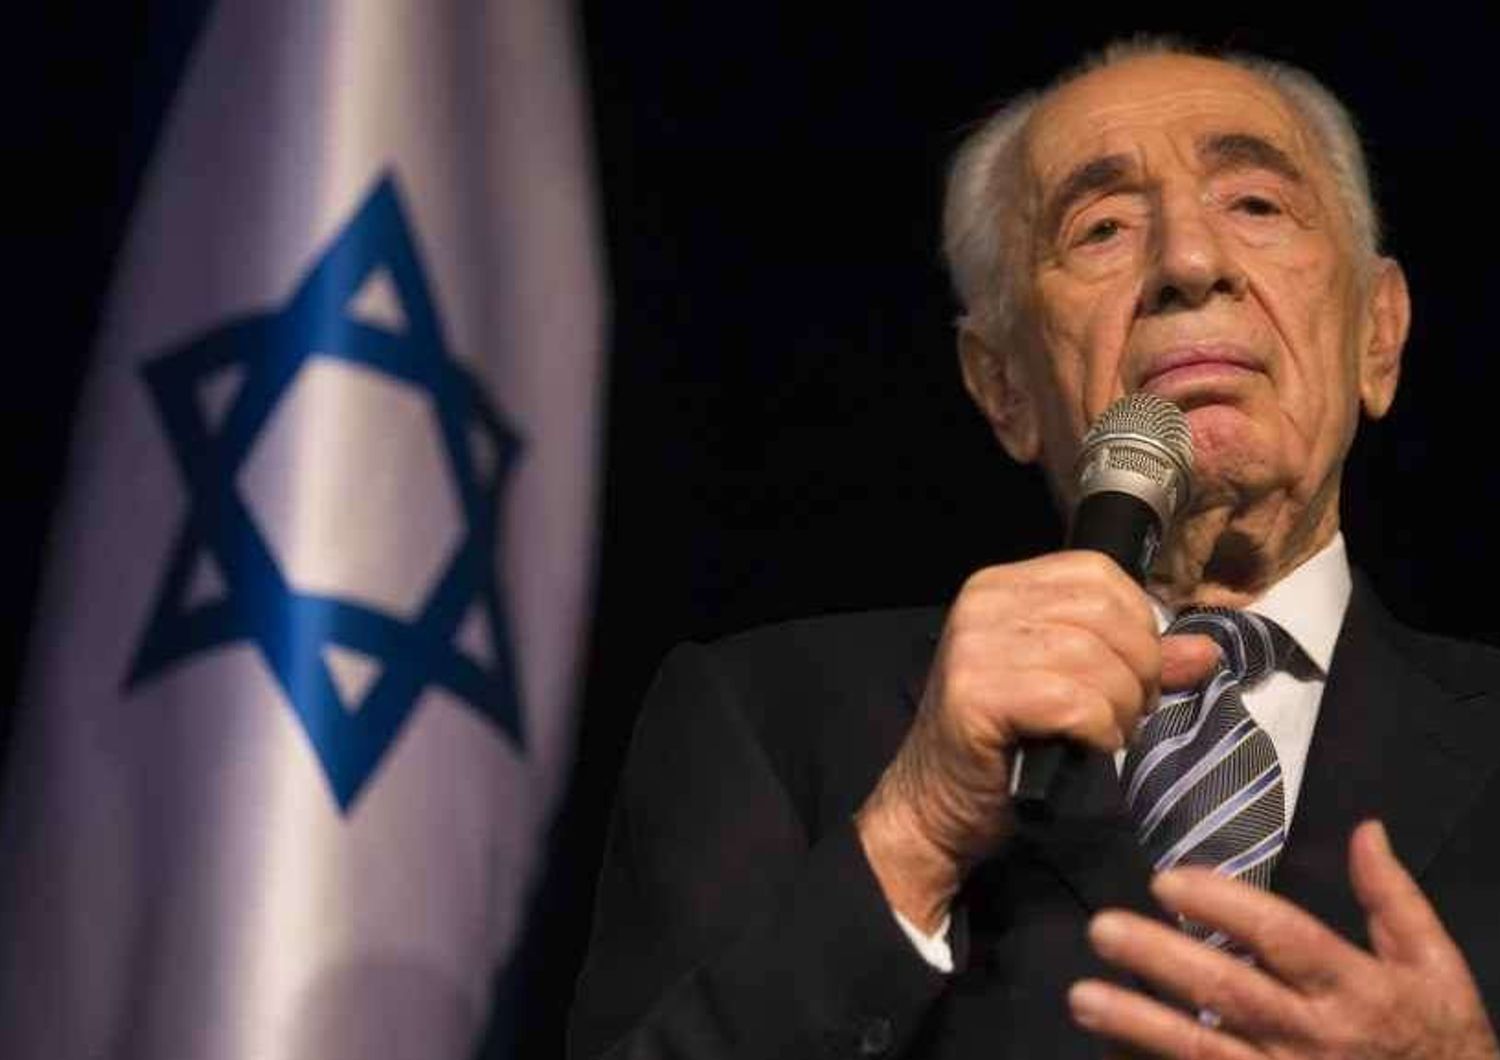 Peres chiede "scusa" per morte 4 ragazzini, "un incidente"